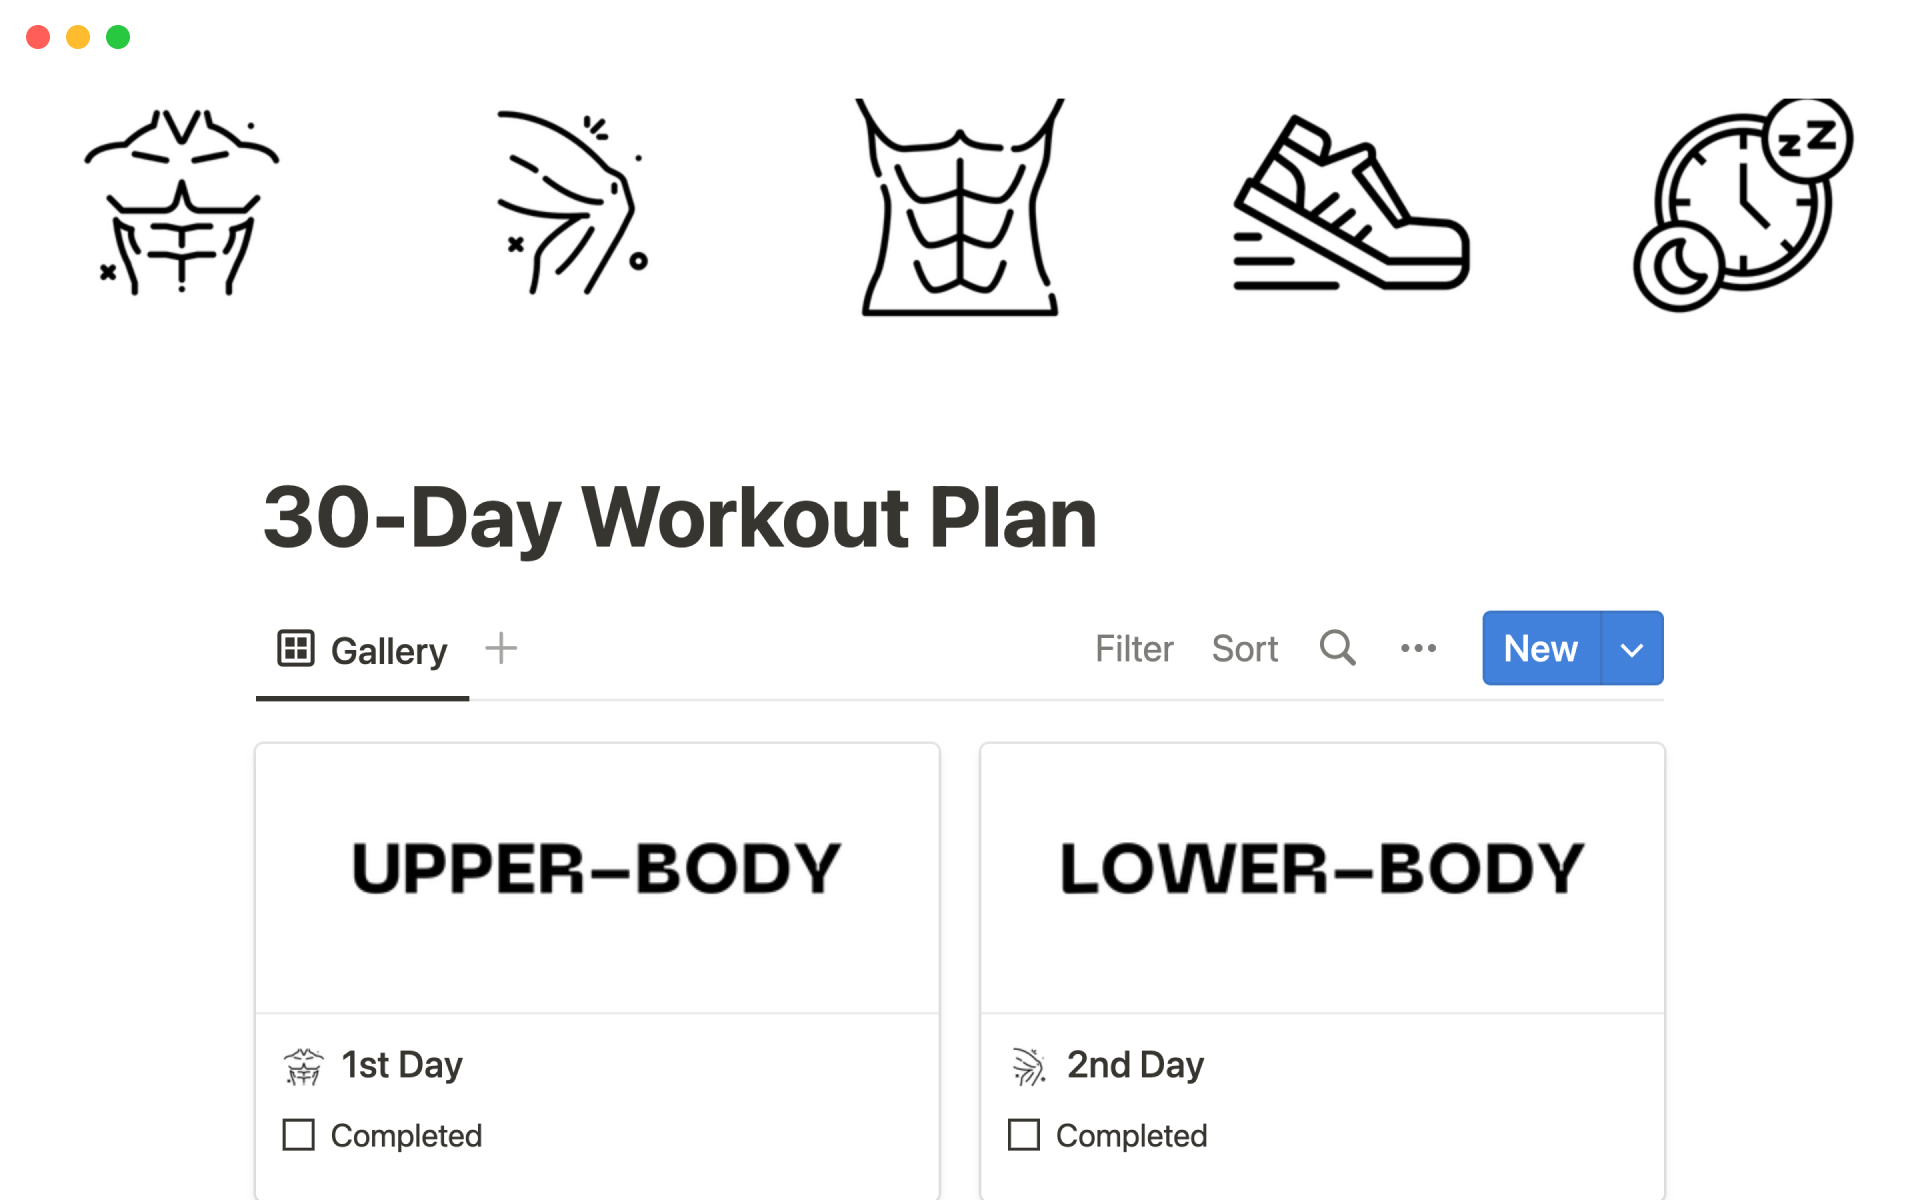 Uma prévia do modelo para 30-day workout plan